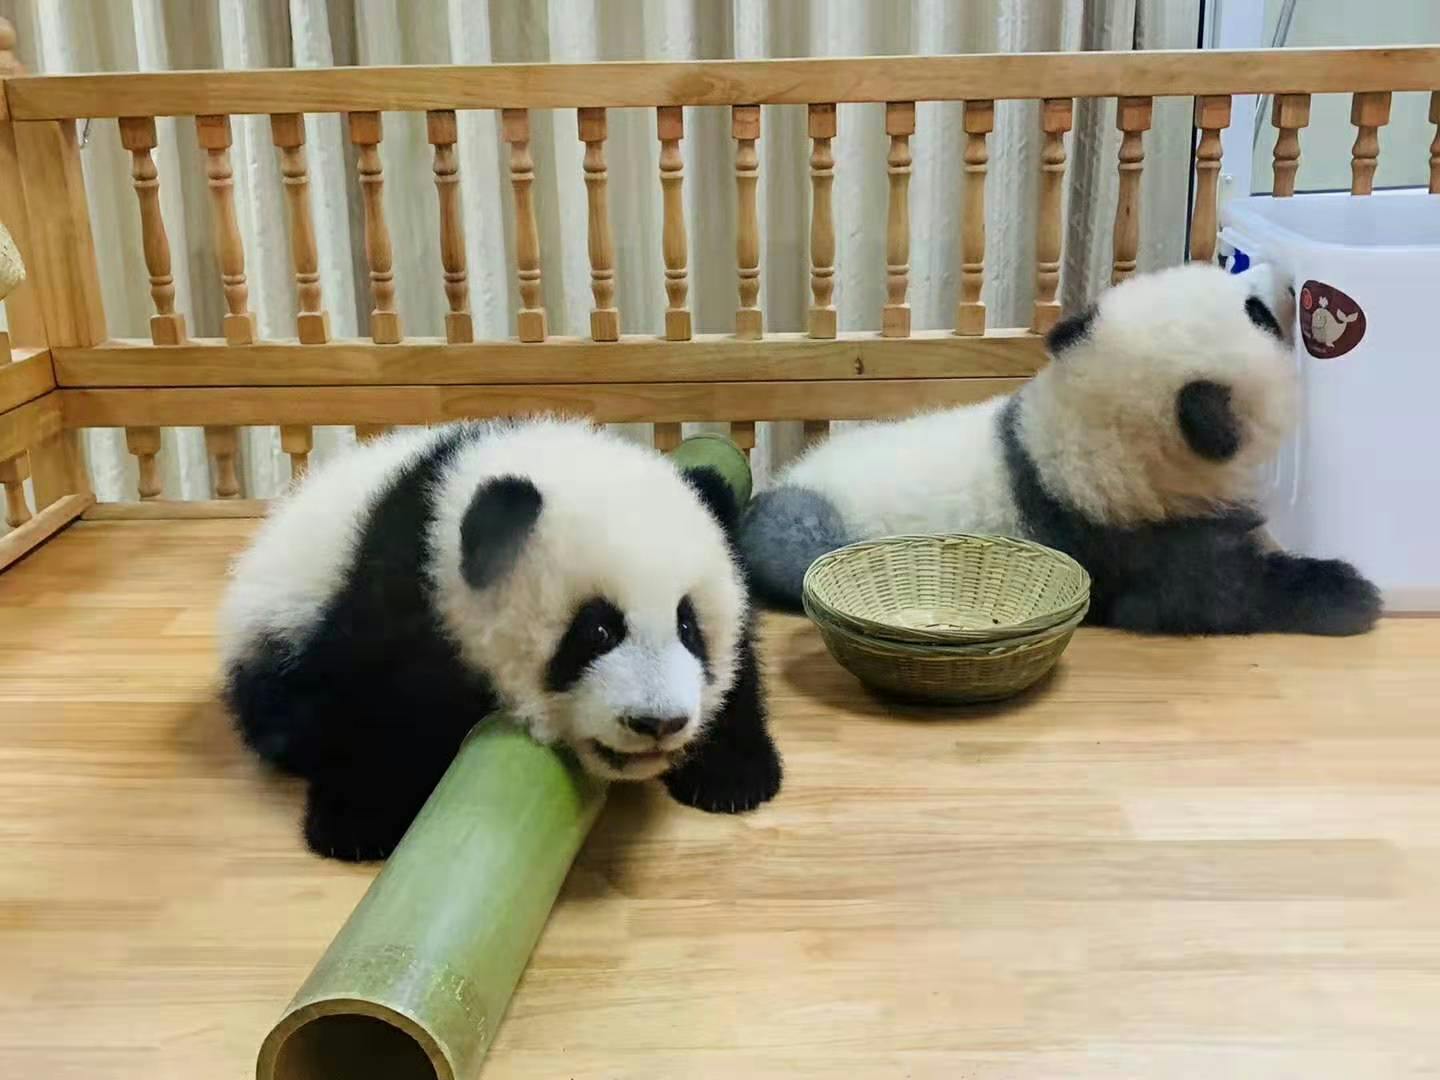 Excursão privada de dia inteiro, viagem ao Panda e passeios turísticos personalizados pela cidade